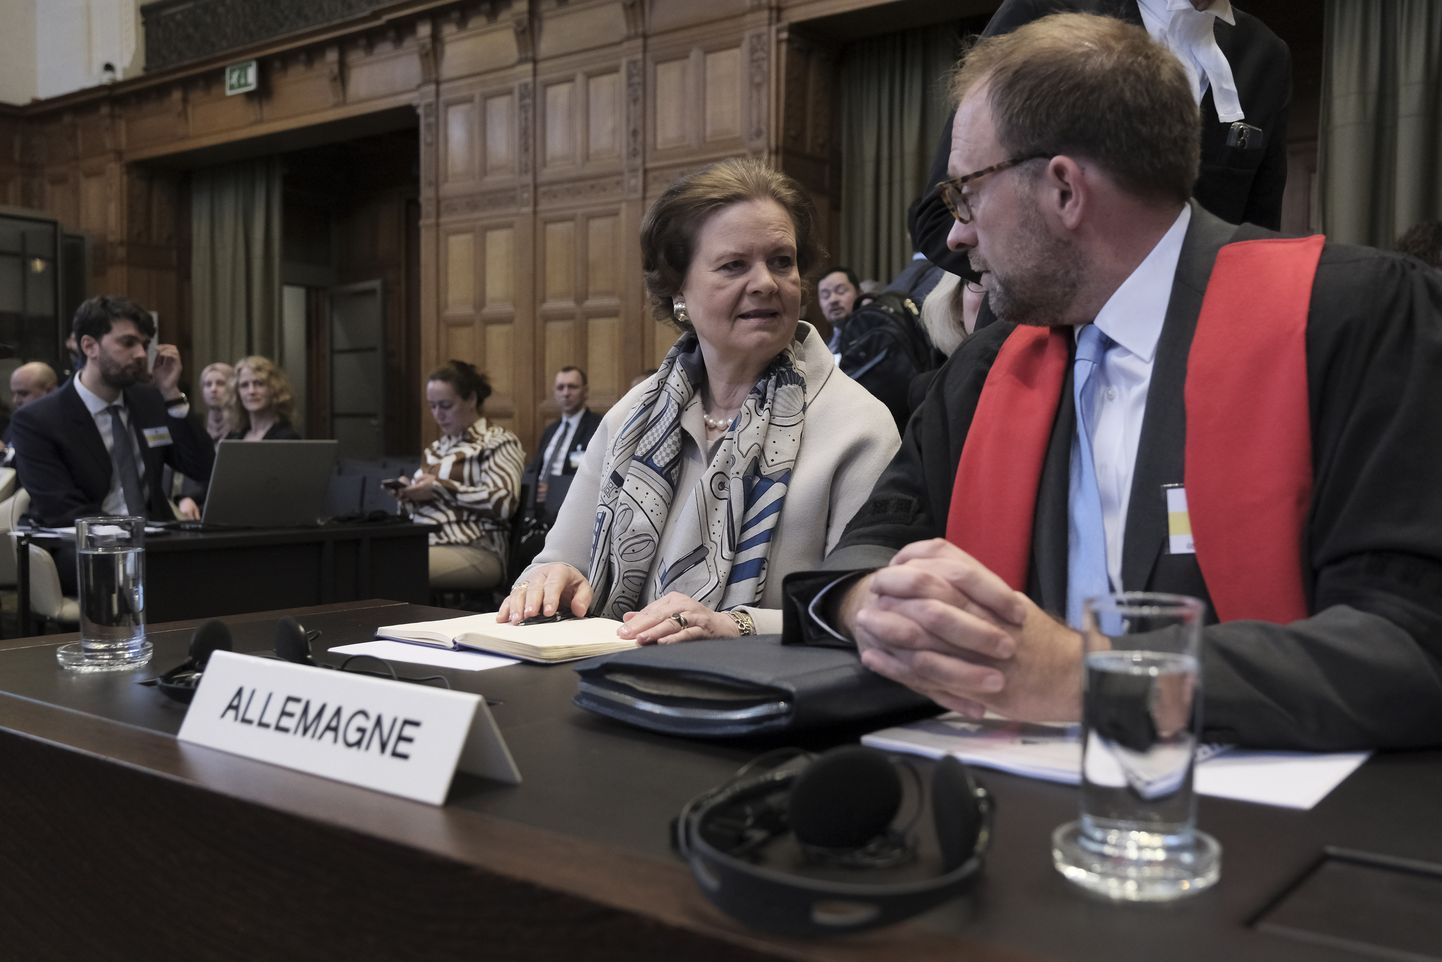 Saksamaa esindaja Tania von Uslar-Gleichen Haagi rahvusvahelises kohtus.